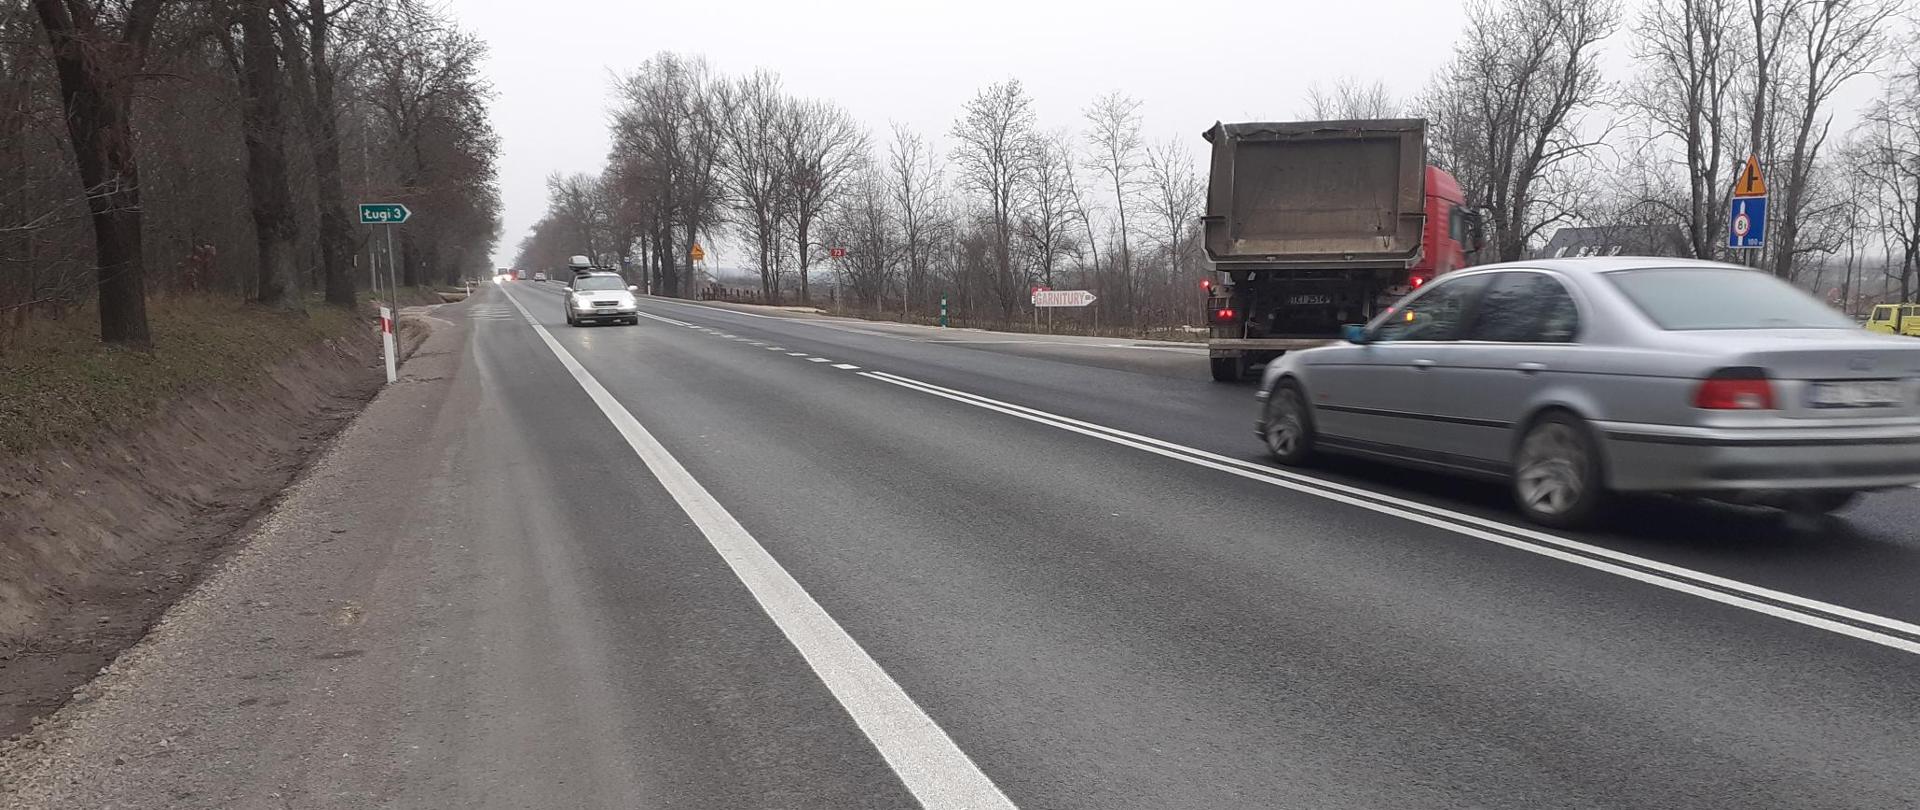 DK73 Suchowola - jednojezdniowa droga asfaltowa z podwójną białą ciągłą linią w środku, samochód ciężarowy skręca w prawo, osobowe jadą przeciwległymi pasami ruchu, każdy w swoim kierunku 